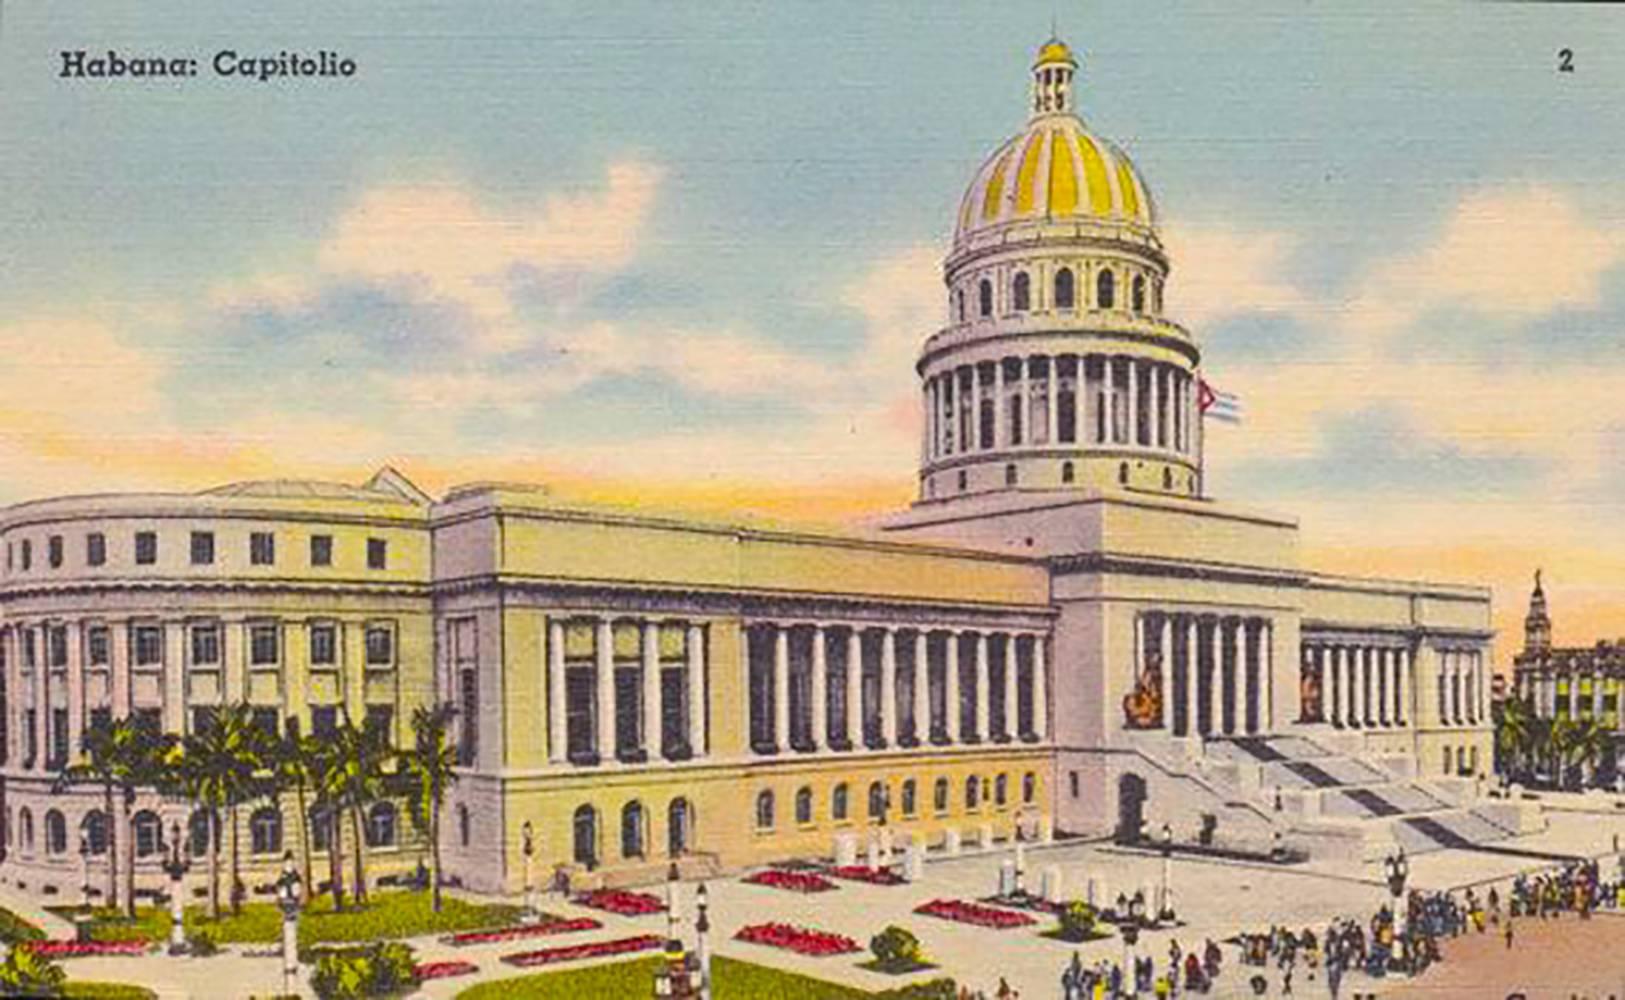 Japanese Havana Capitol Building, 1930s Souvenir Architectural Model For Sale